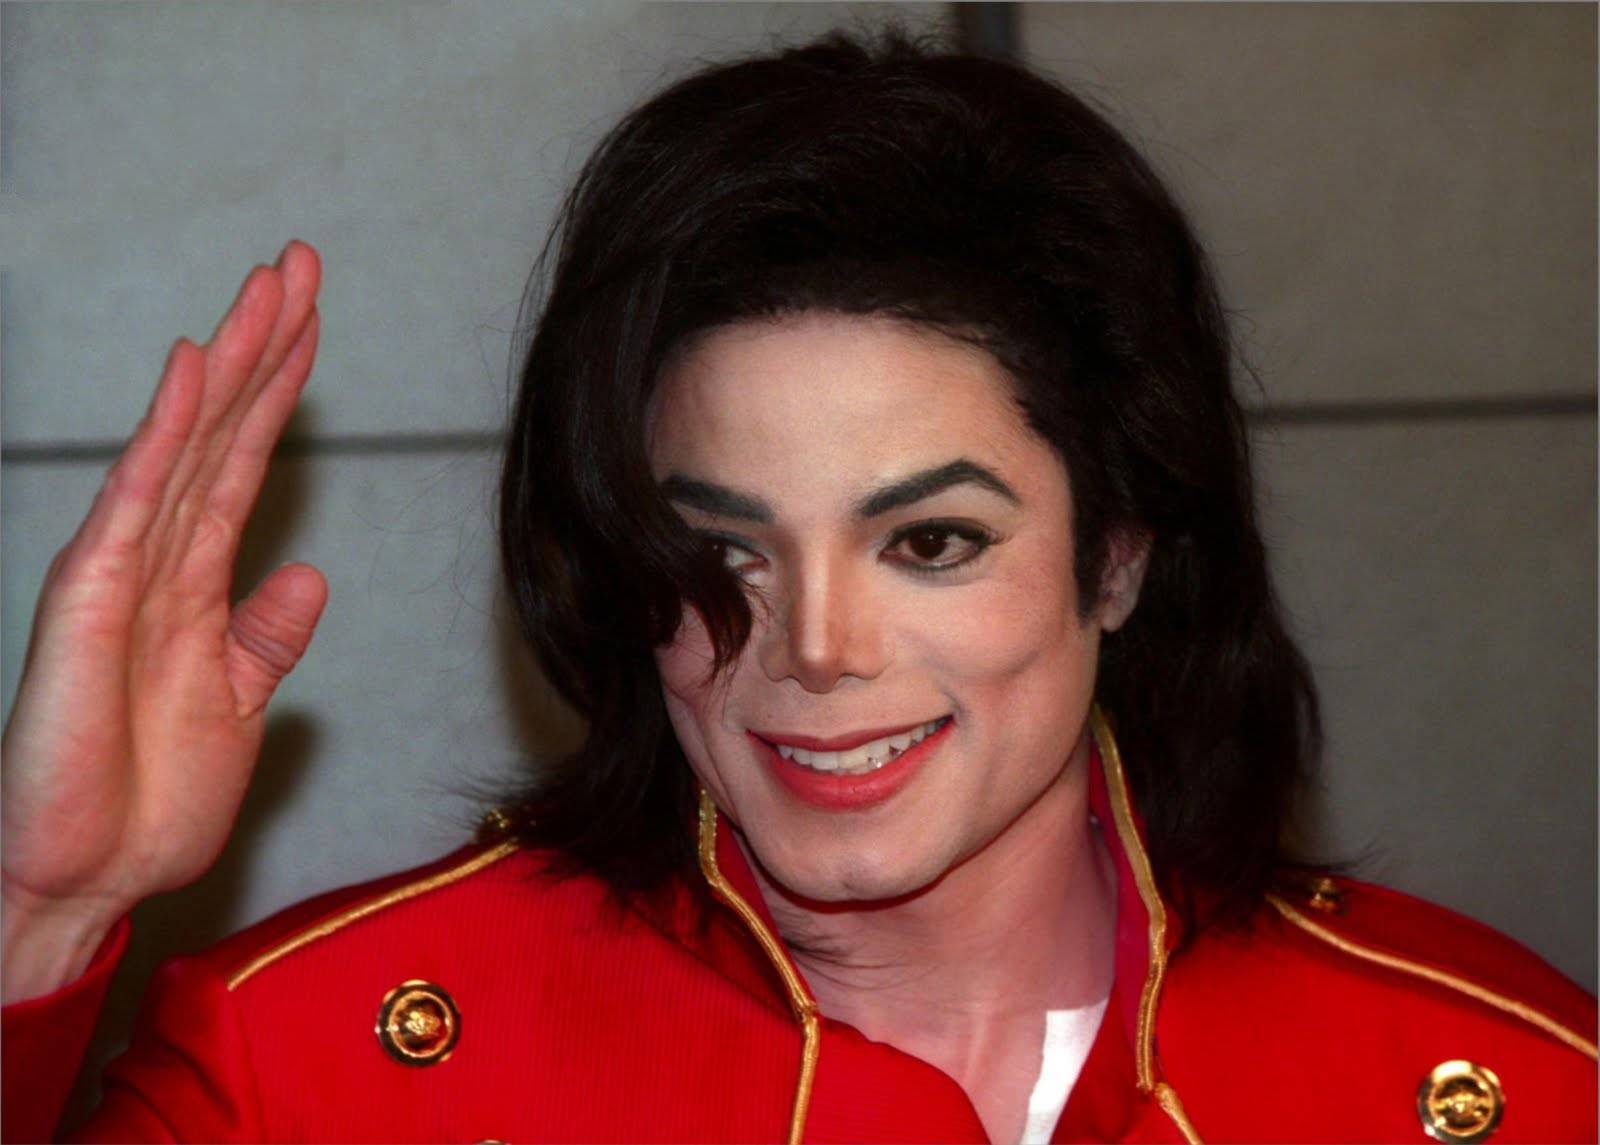 Michael Jackson sigue siendo la estrella fallecida que más dinero genera con 825 millones de dólares